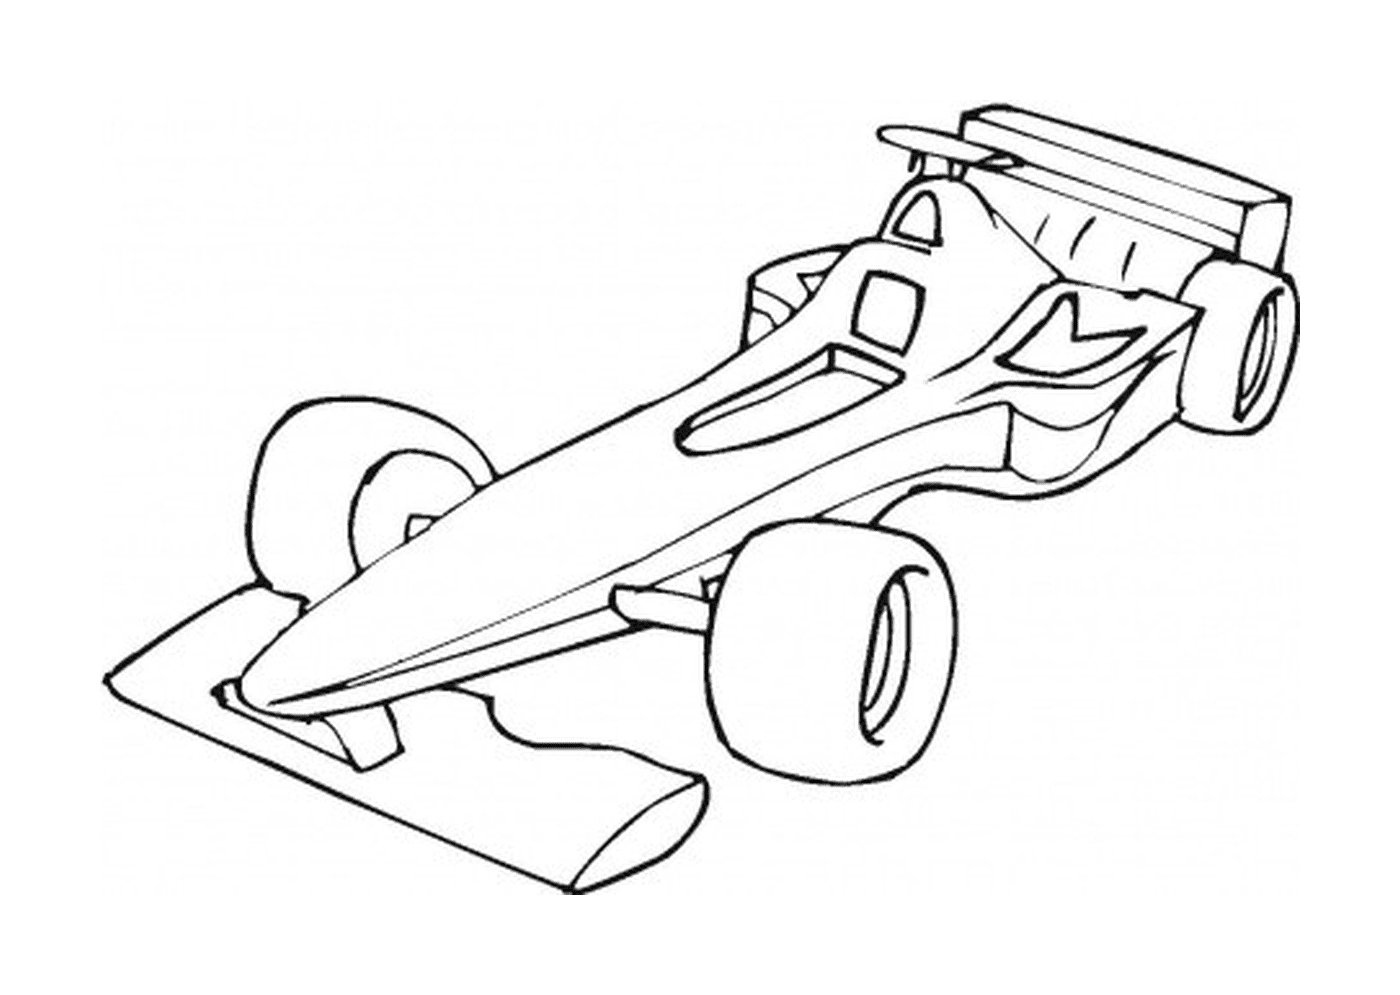  Fórmula 1 coche 